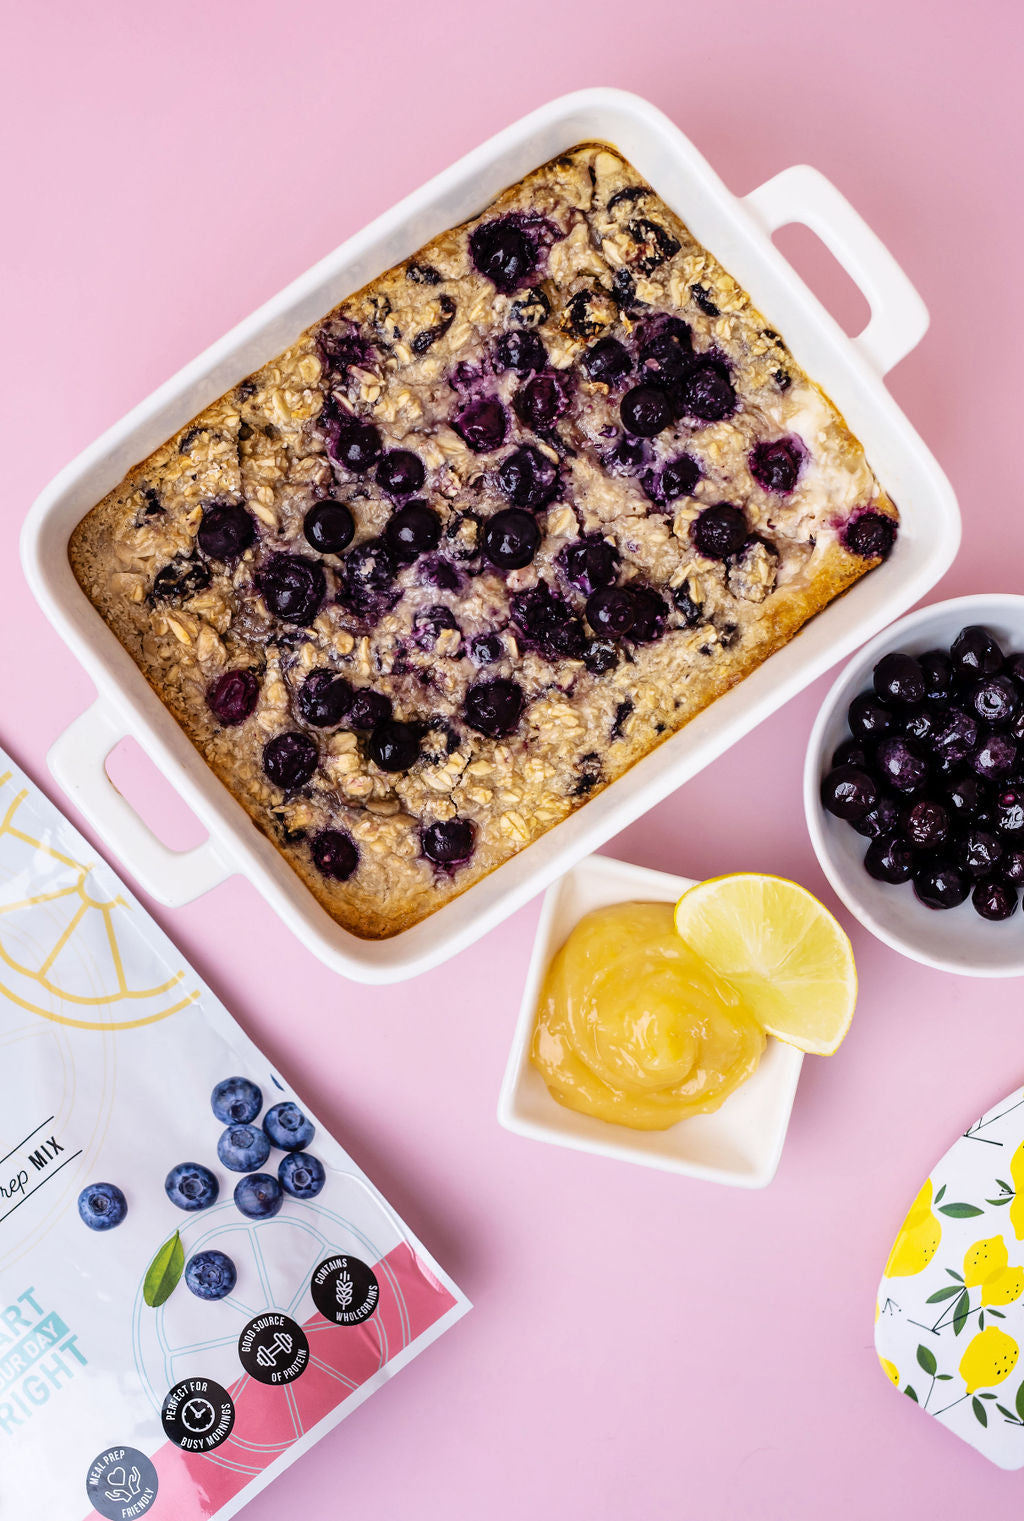 Real Nourish - Blueberry & Lemon Curd Breakfast Bake